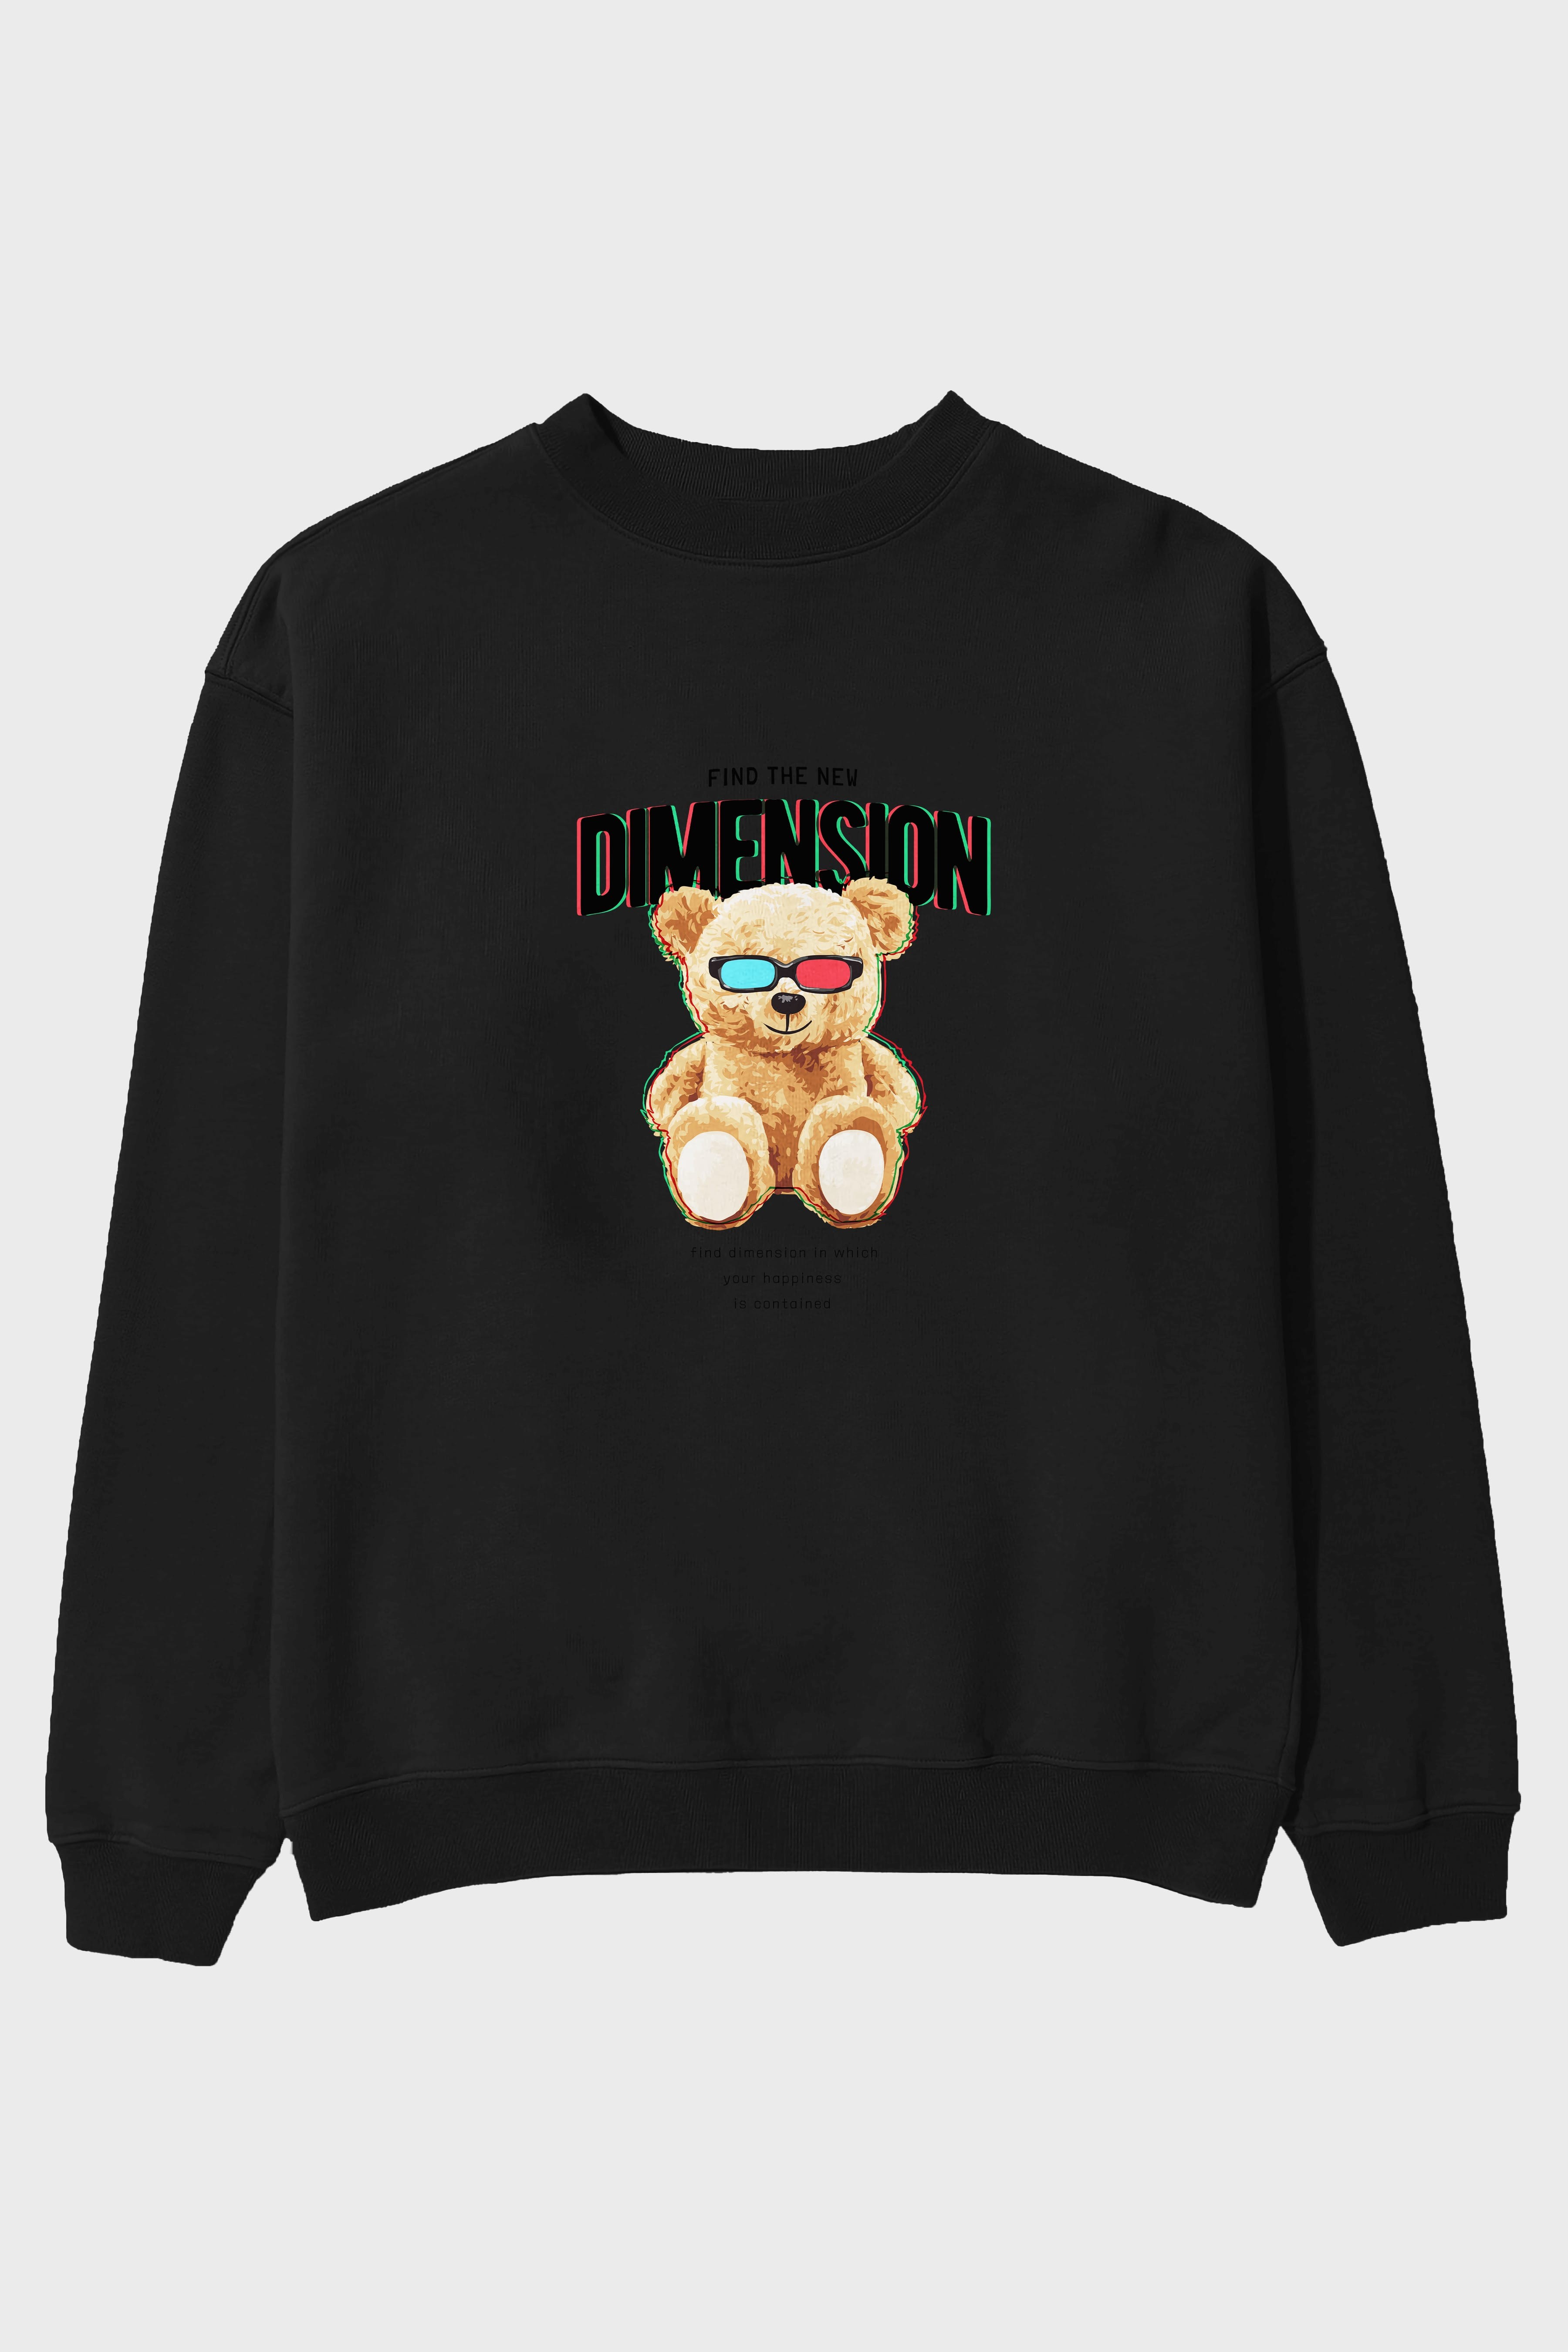 Teddy Bear Dimension Ön Baskılı Oversize Sweatshirt Erkek Kadın Unisex